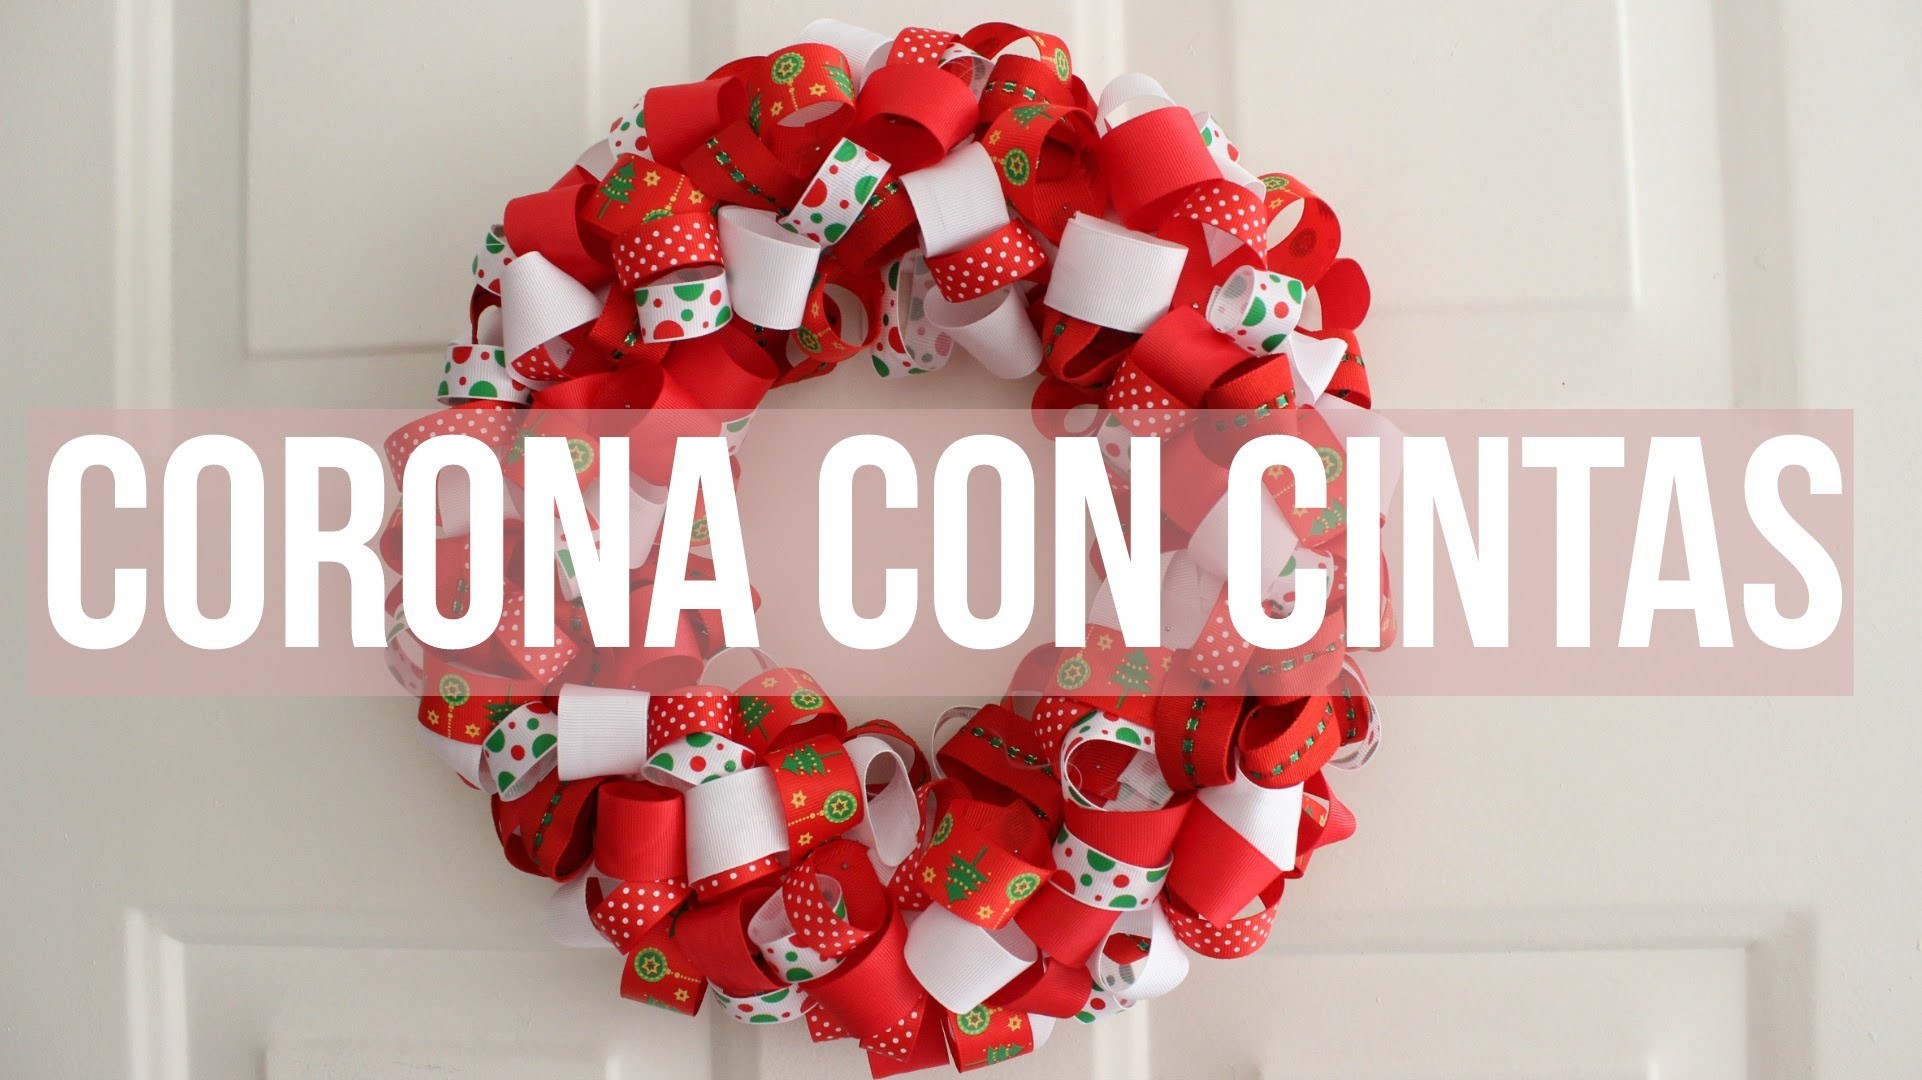 Especial de Navidad: ¿Cómo hacer una CORONA navideña con CINTAS?- Kathy Gámez